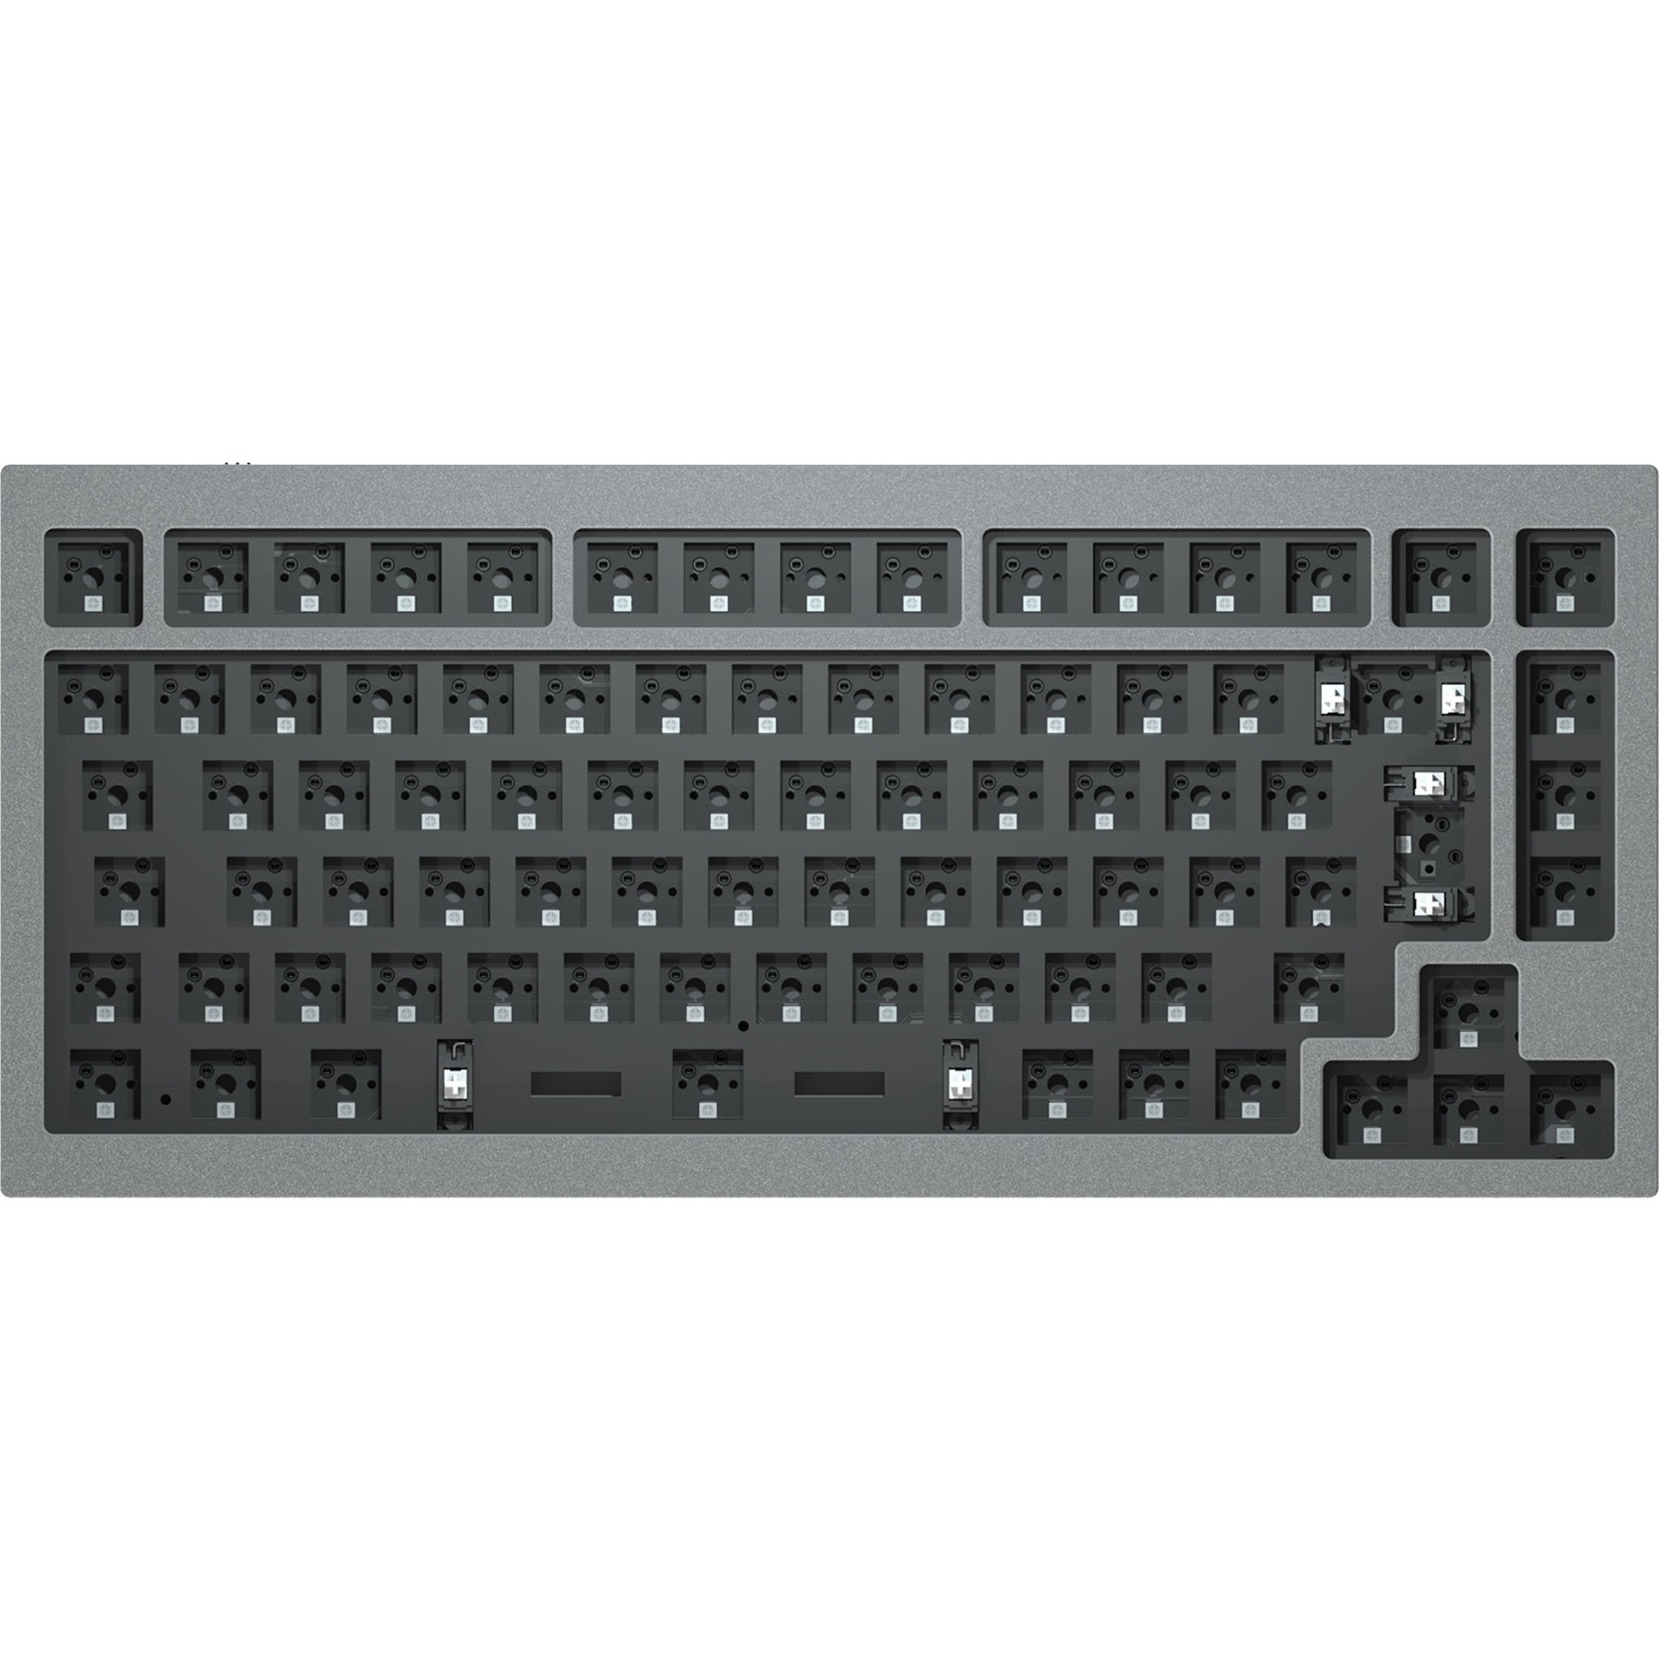 Image of Alternate - Q1 Barebone ISO, Gaming-Tastatur online einkaufen bei Alternate